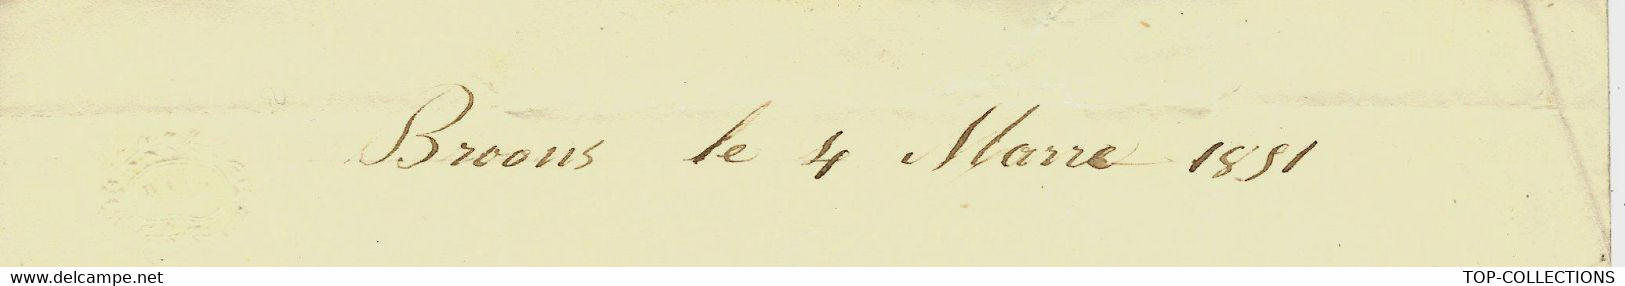 1851 BOIS FORETS De Broons Cotes D'Armor Par Chateaubourg GARDE FORESTIER DEGATS CHEVAUX => Forges De Port Brillet Laval - Historische Dokumente